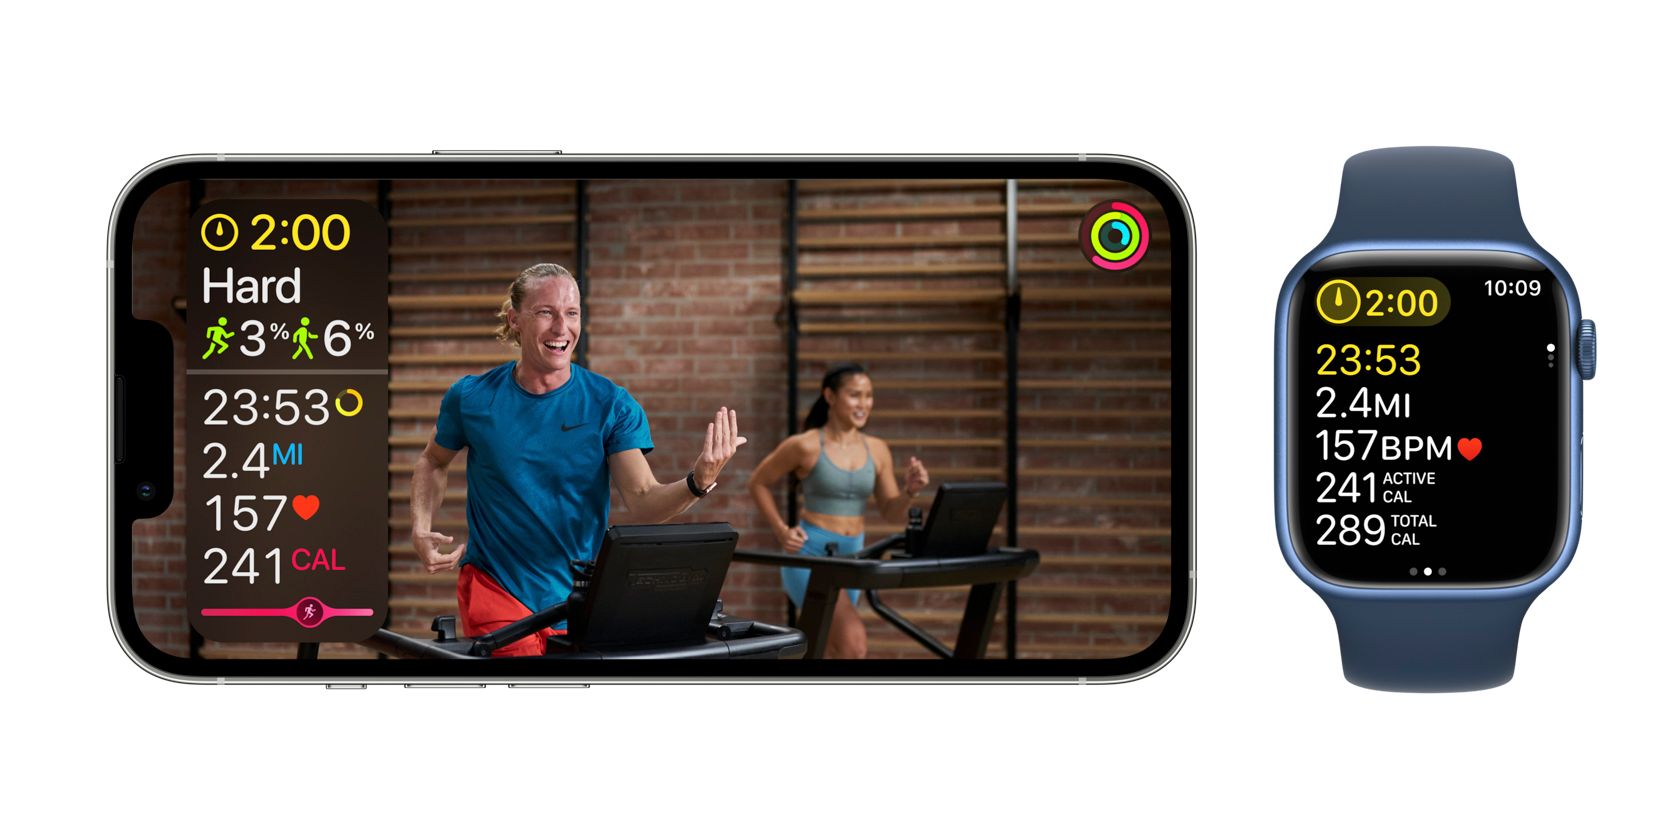 Bài tập apple fitness plus hiển thị trên màn hình iphone và mặt apple watch